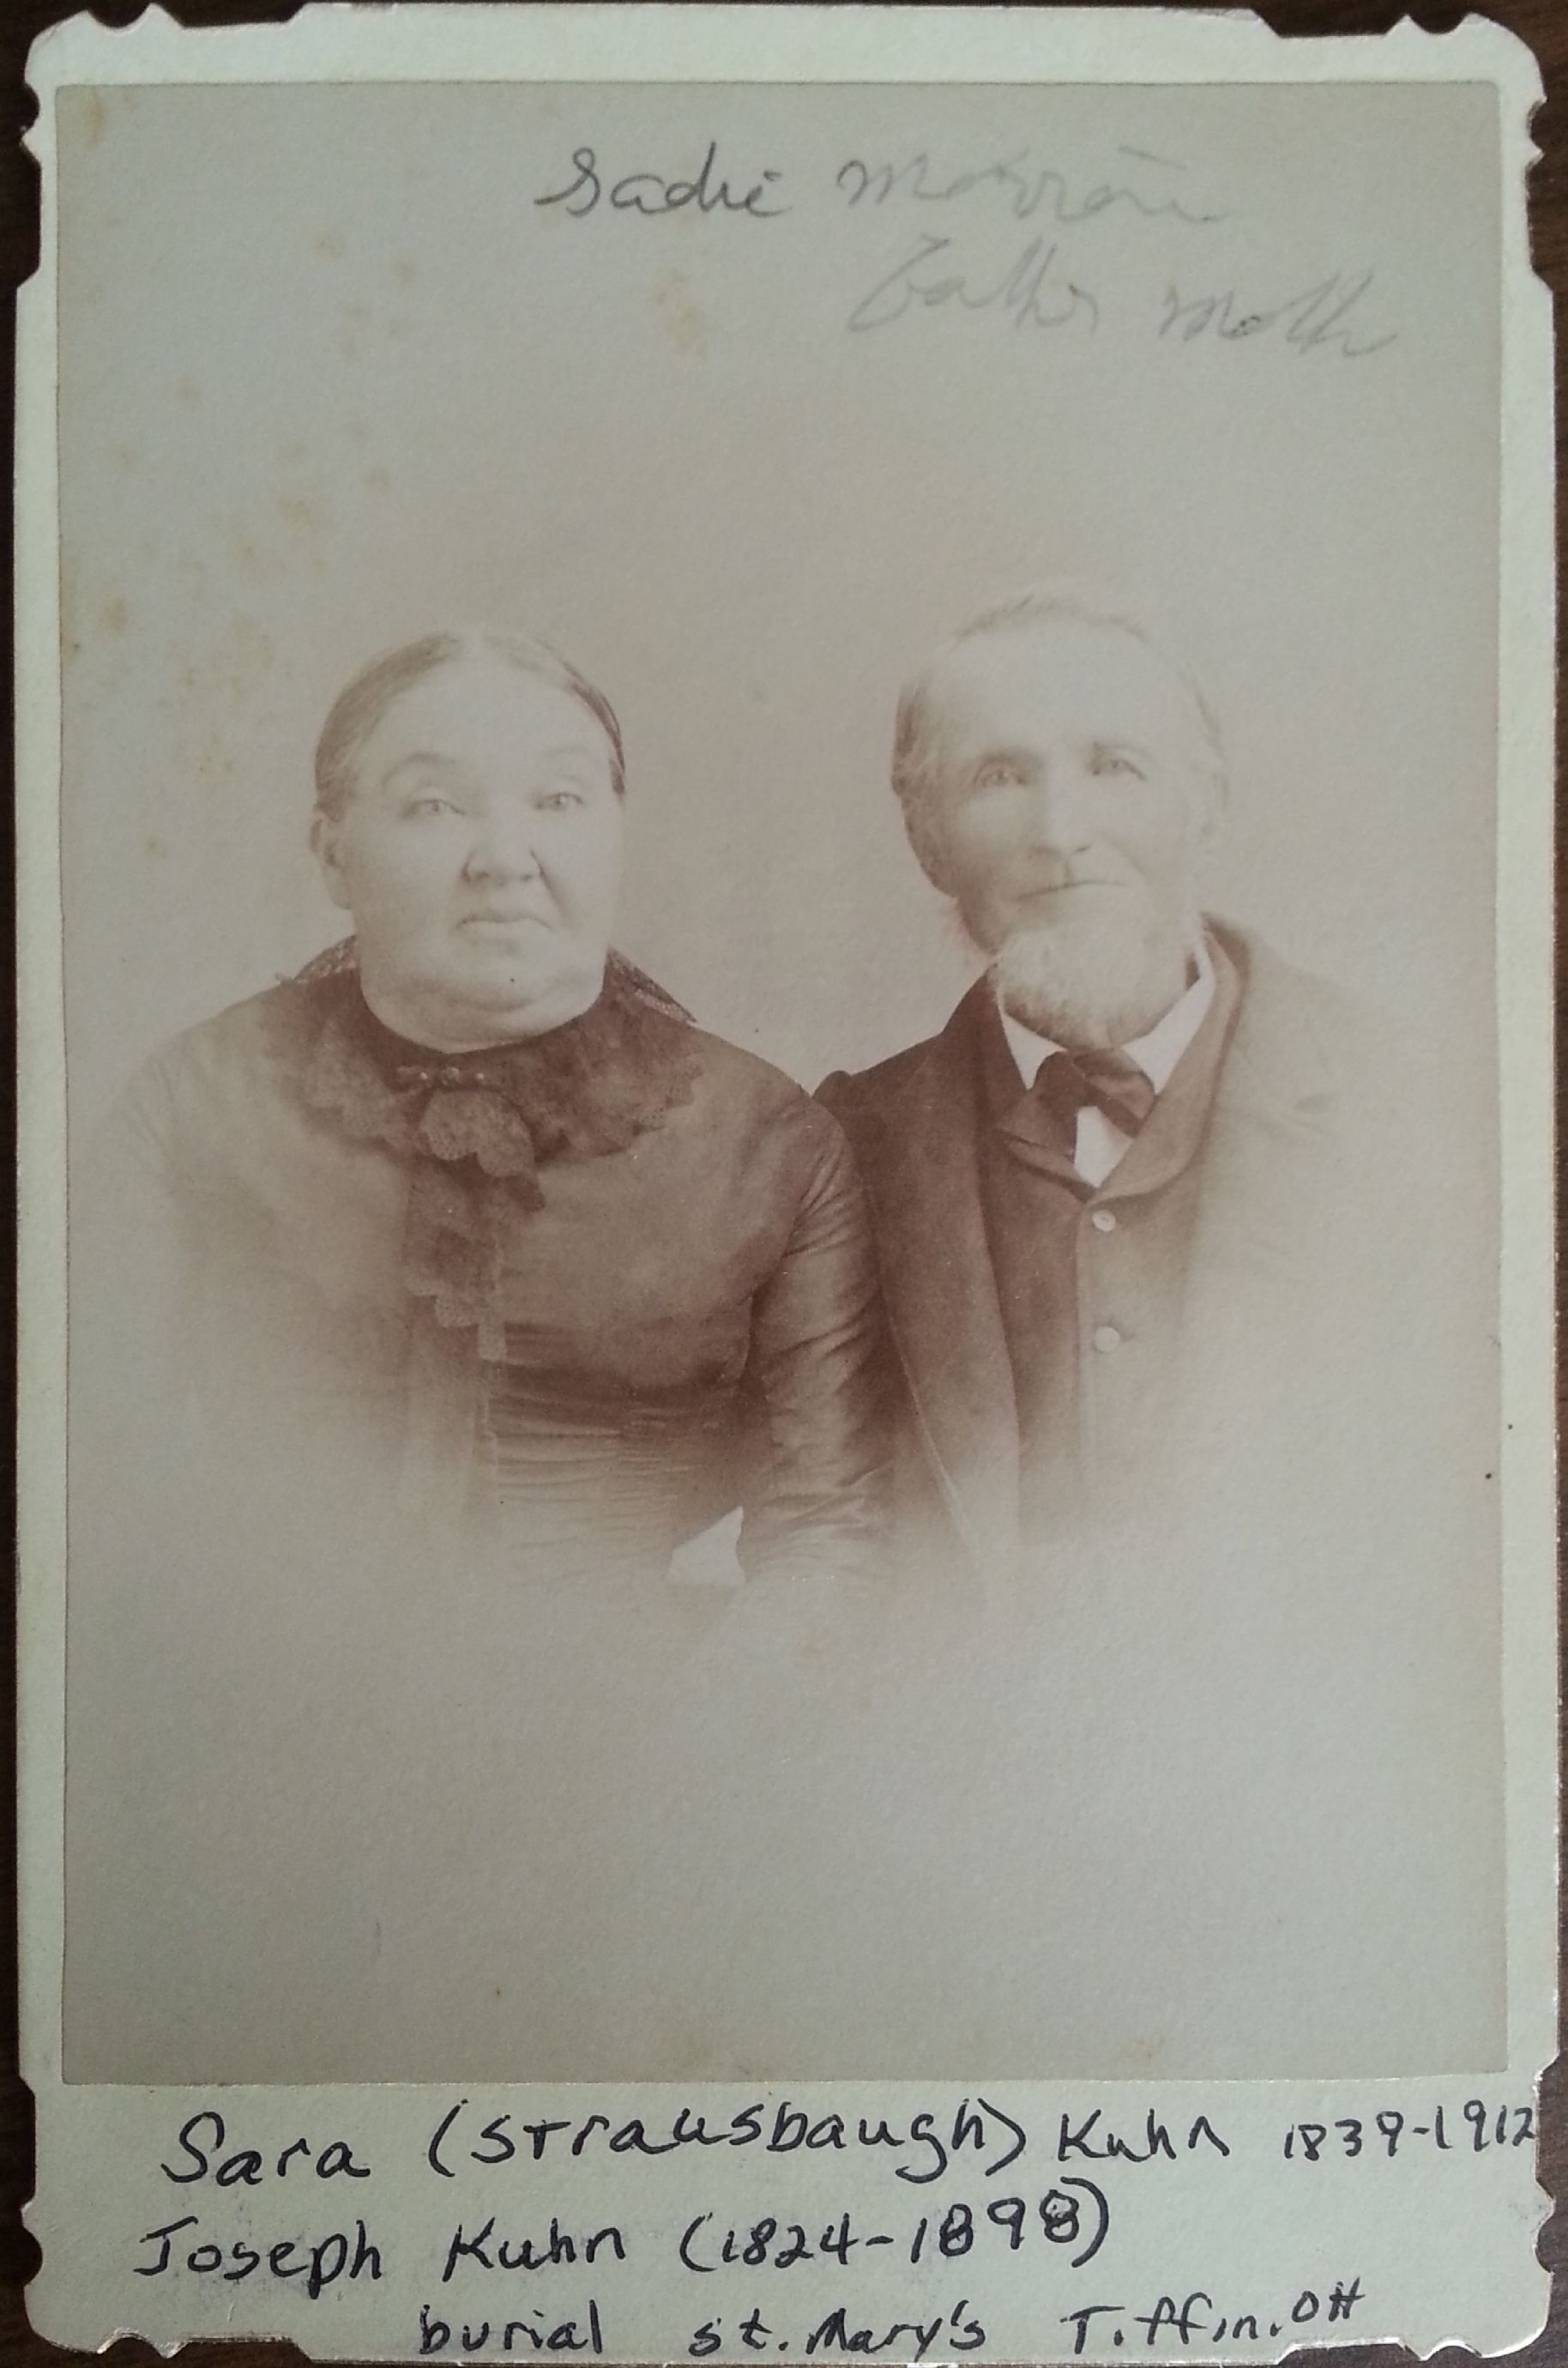 Joseph & Sara (Strausbaugh) Kuhn